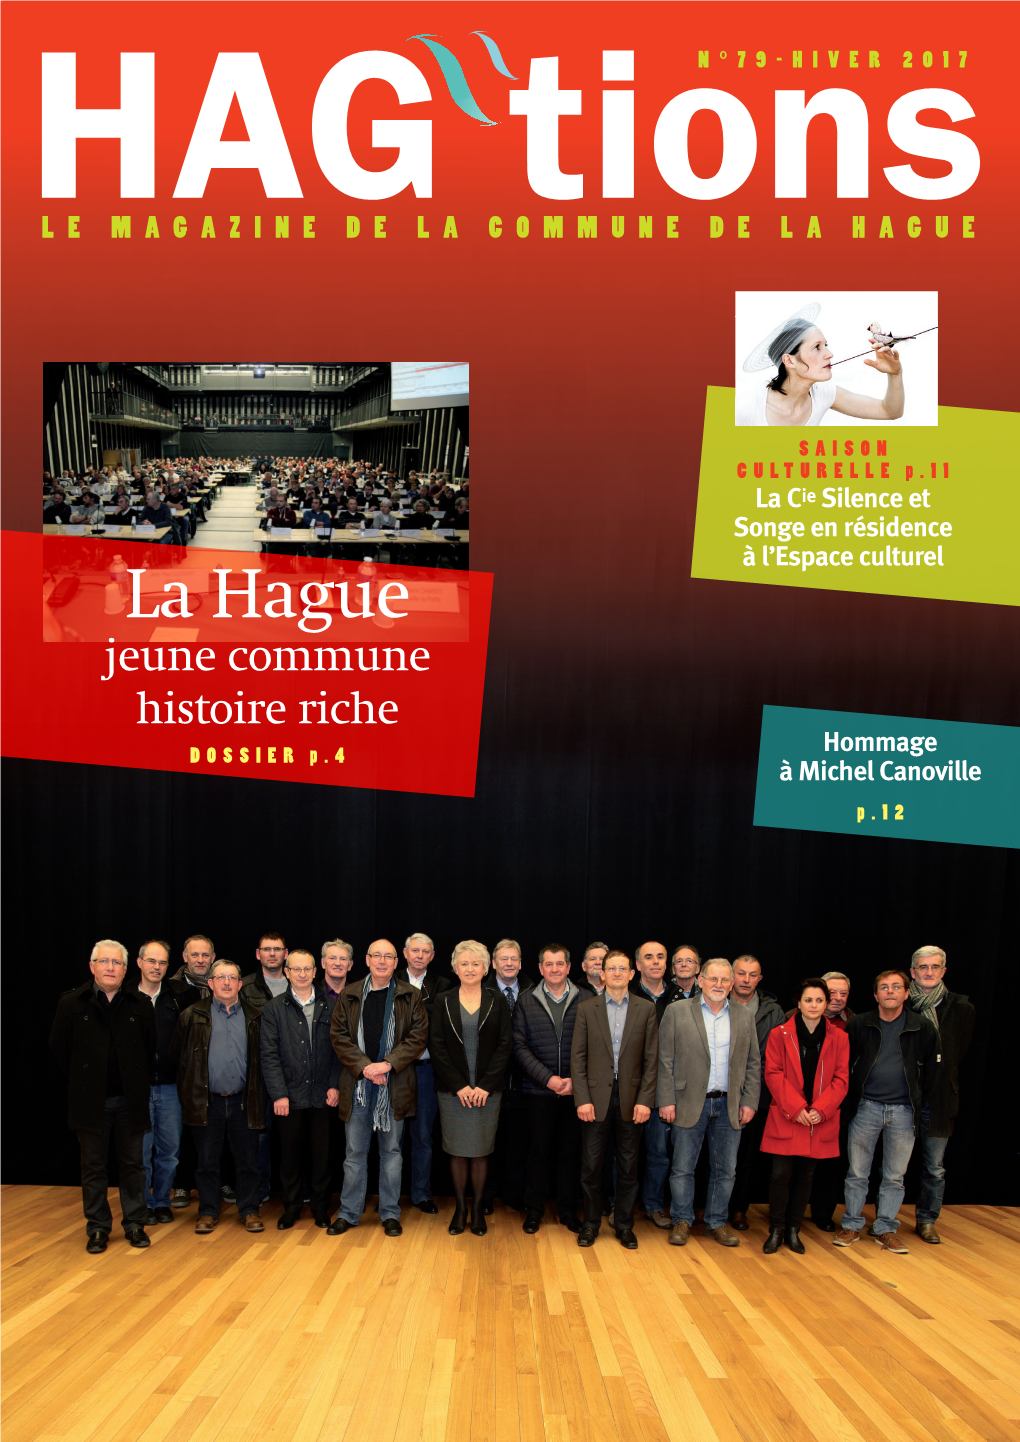 HAG Tions Une Publication De La Commune De La Hague, 8 Rue Des Tohagues BP 217 - Beaumont-Hague - 50442 La Hague Cedex